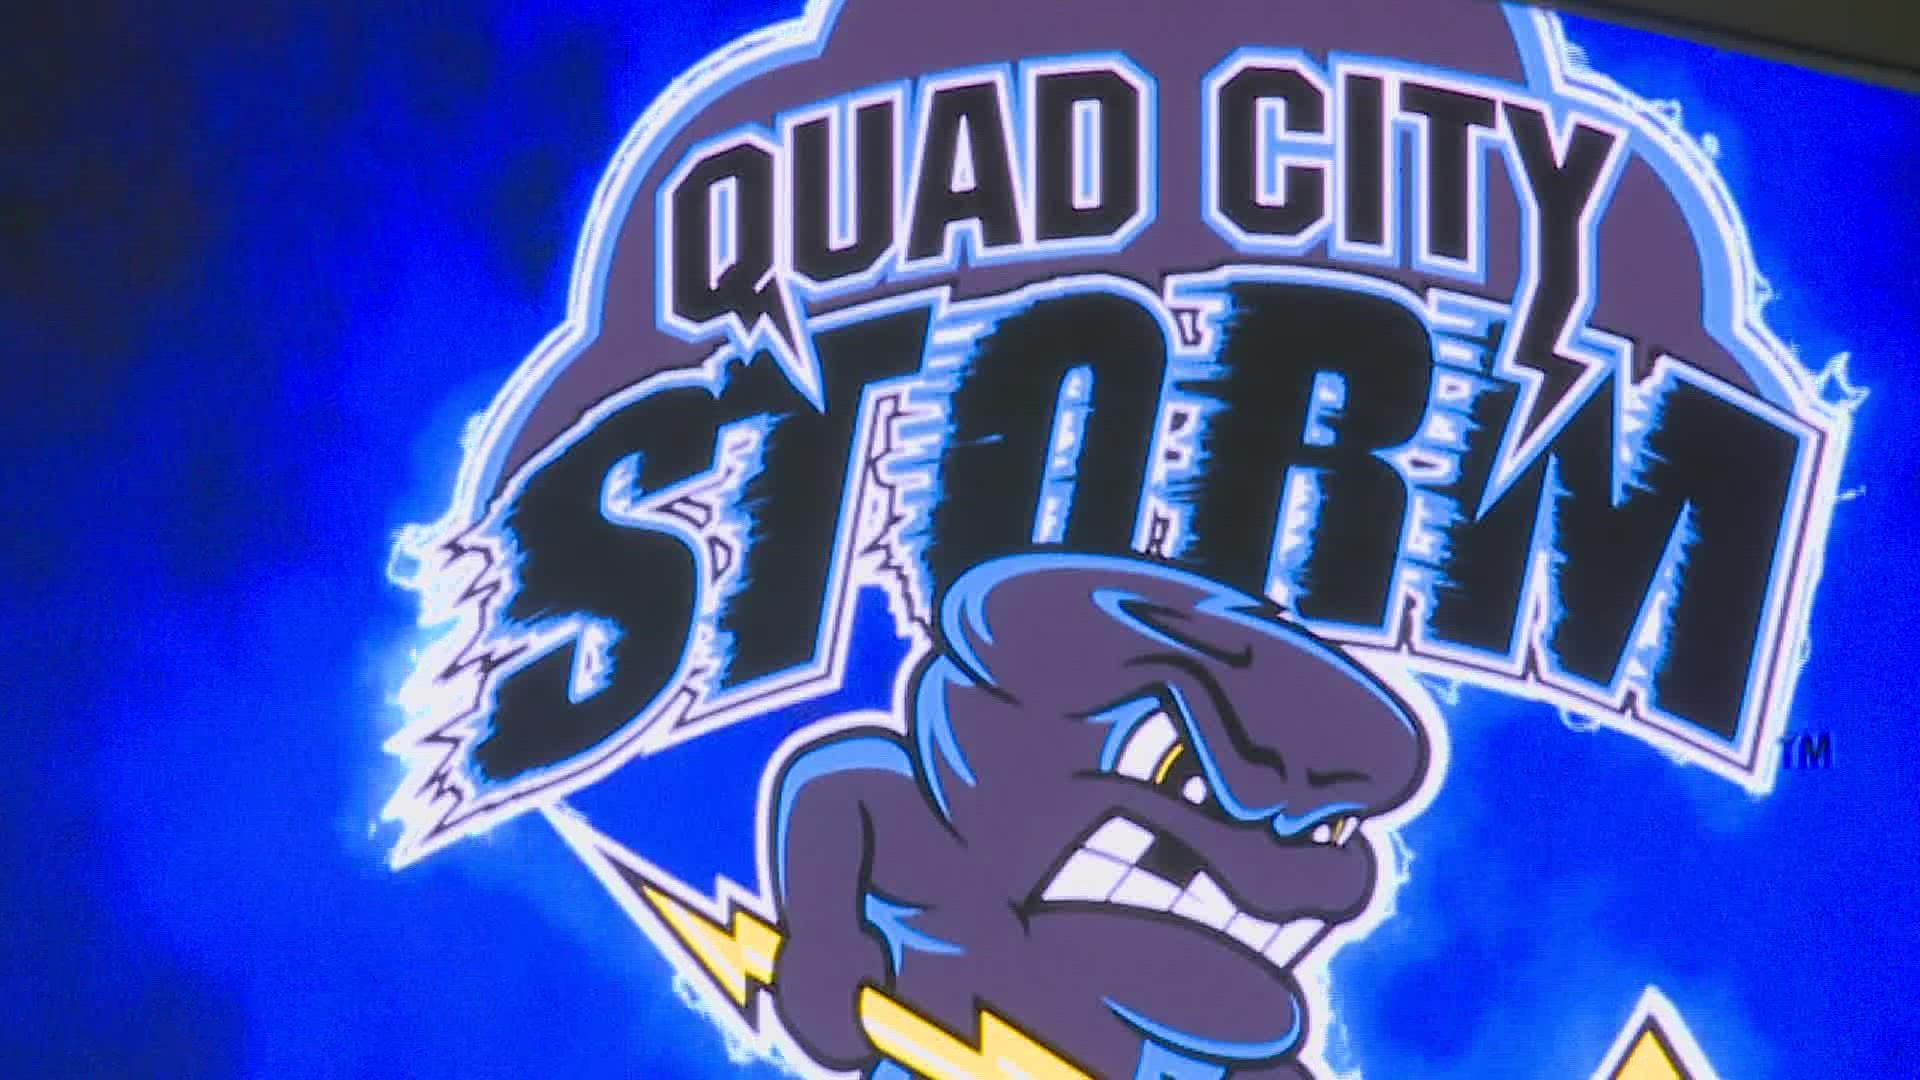 Quad City Storm family returns to TaxSlayer Center Friday